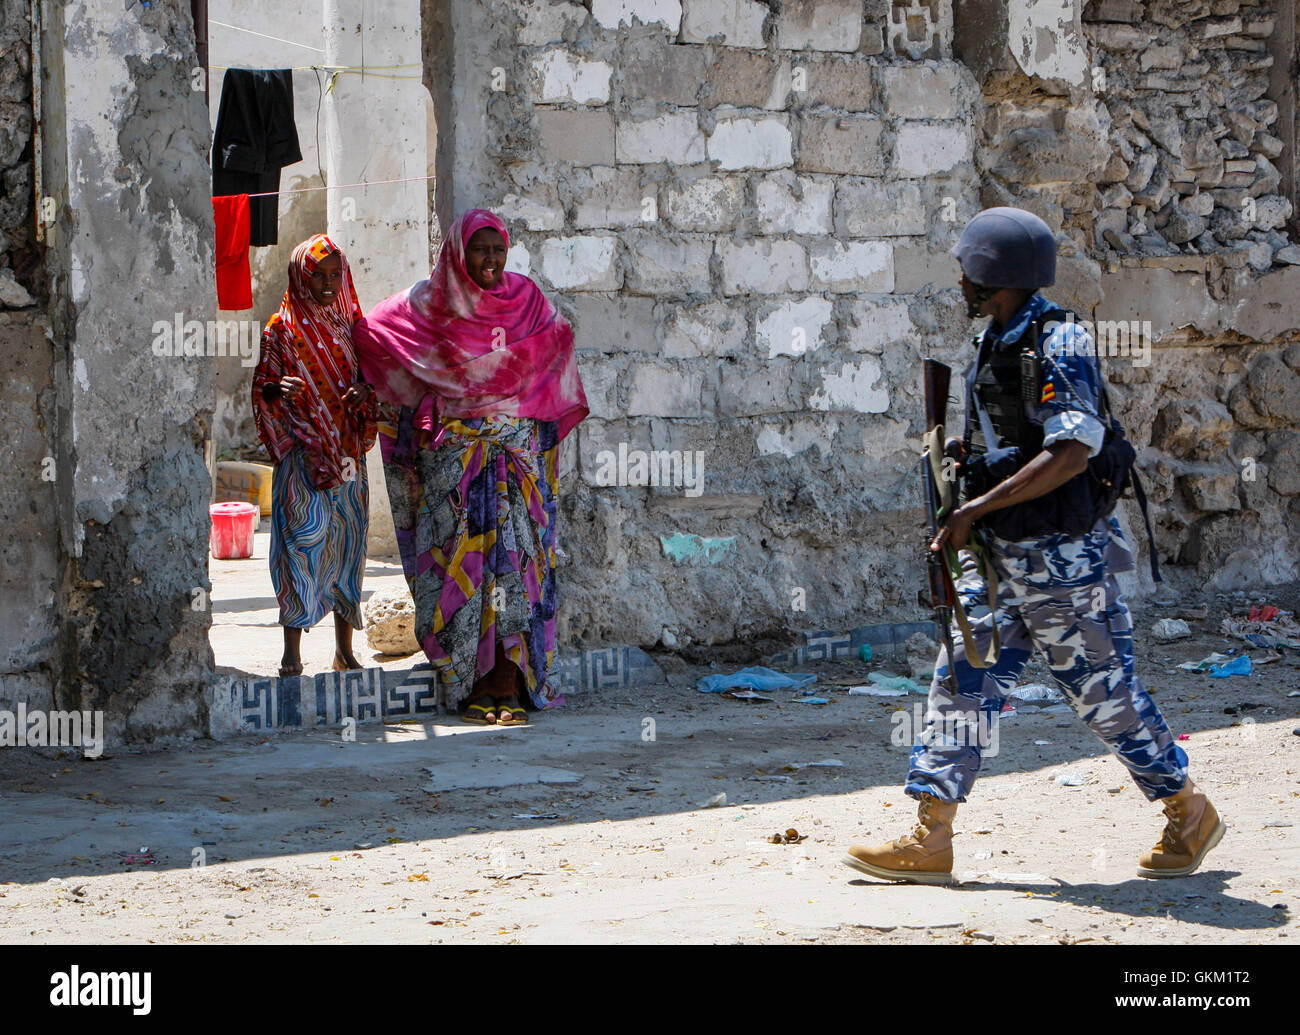 La Somalie, Mogadiscio : Dans un document de cours photos prises et publiées par l'Union africaine et l'équipe de support d'information des Nations Unies 09 novembre, une femme somalienne des gestes aussi un agent de la police ougandaise agissant comme partie d'une unité de police constituée (FPU) avec la Mission de l'Union de l'Union africaine en Somalie (AMISOM) marche dernières pendant une patrouille à pied dans le district de Kaa'ran dans la capitale Mogadishu. L'AMISOM FPUs travaillent avec leurs homologues de la Force de police somalienne (SPF) en contribuant à assurer la sécurité à Mogadiscio, en plus d'une formation et d'encadrement du SPF sur le maintien de l'ordre techniques et pratiques. IST UA-ONU PHO Banque D'Images